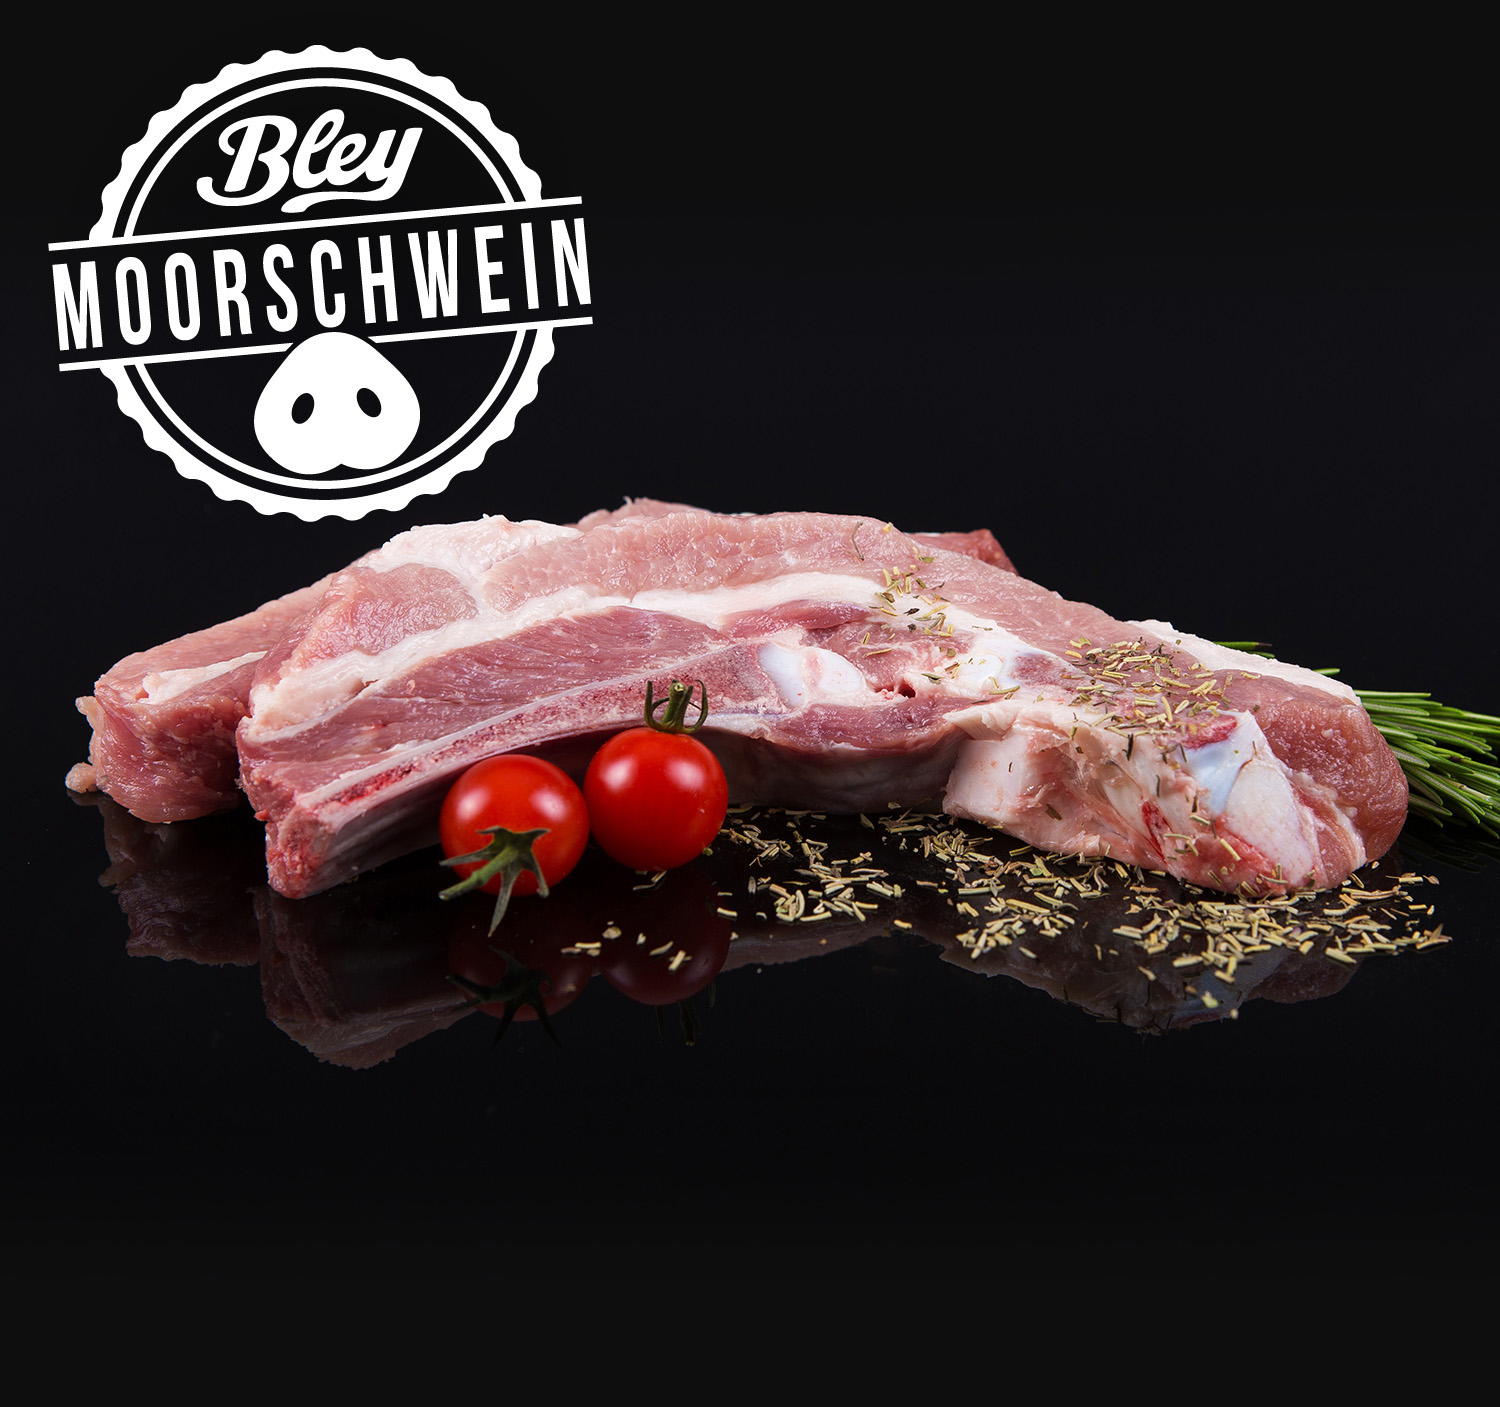 10264-Moorschwein-dicke-Rippe-portioniert-Kopie